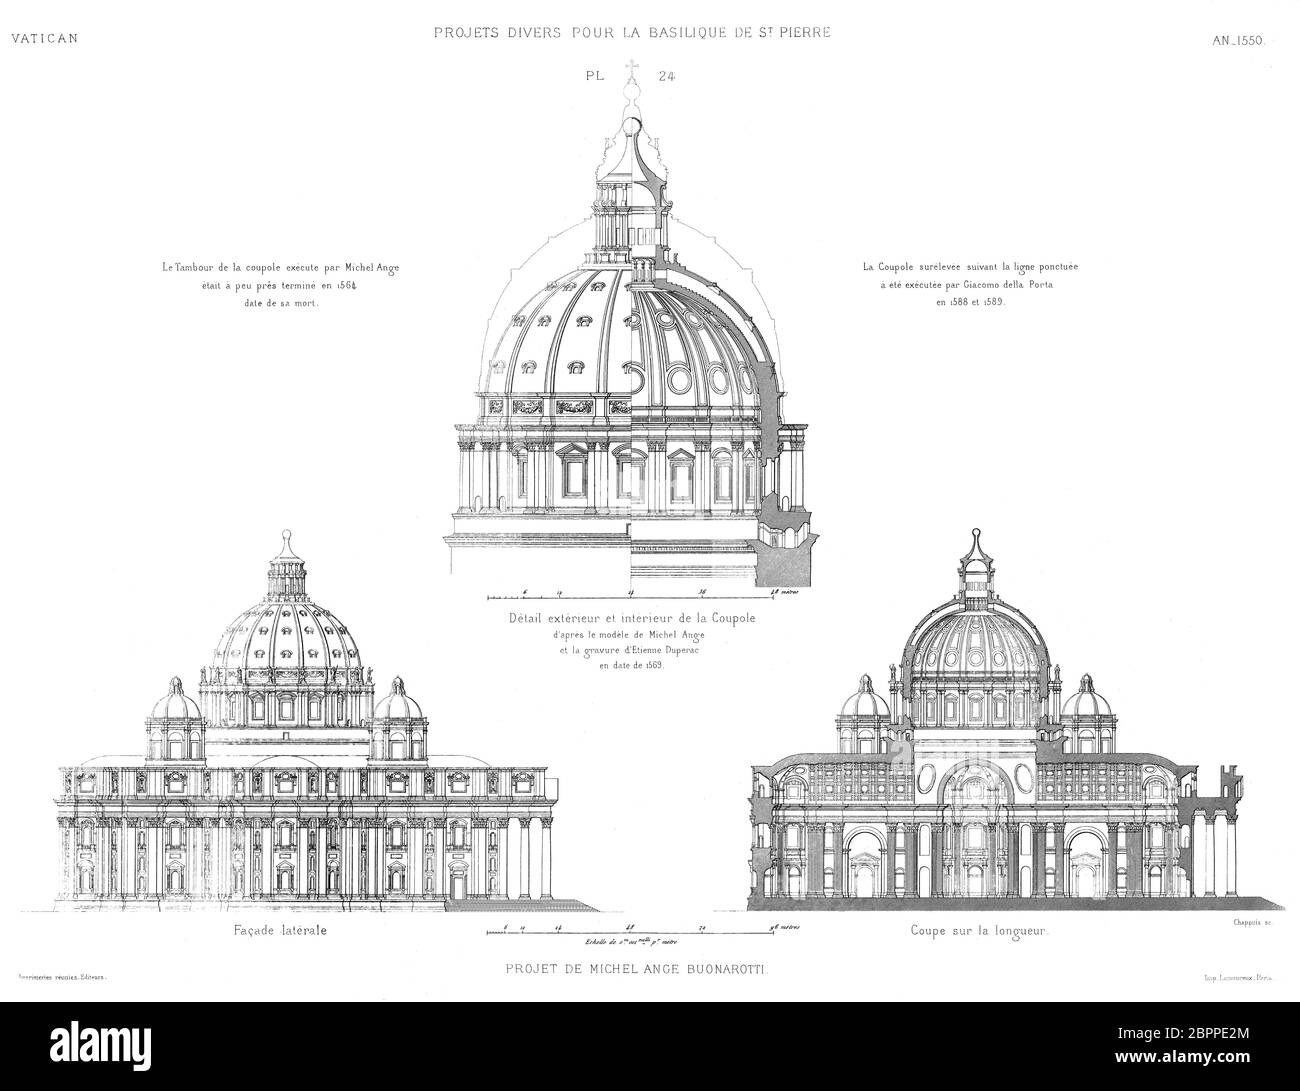 Roma, Vaticano: Proyecto de Miguel Ángel de la Basílica de San Pedro,  fachada lateral, longitud frontal, exterior e interior de la cúpula en 1550  Fotografía de stock - Alamy